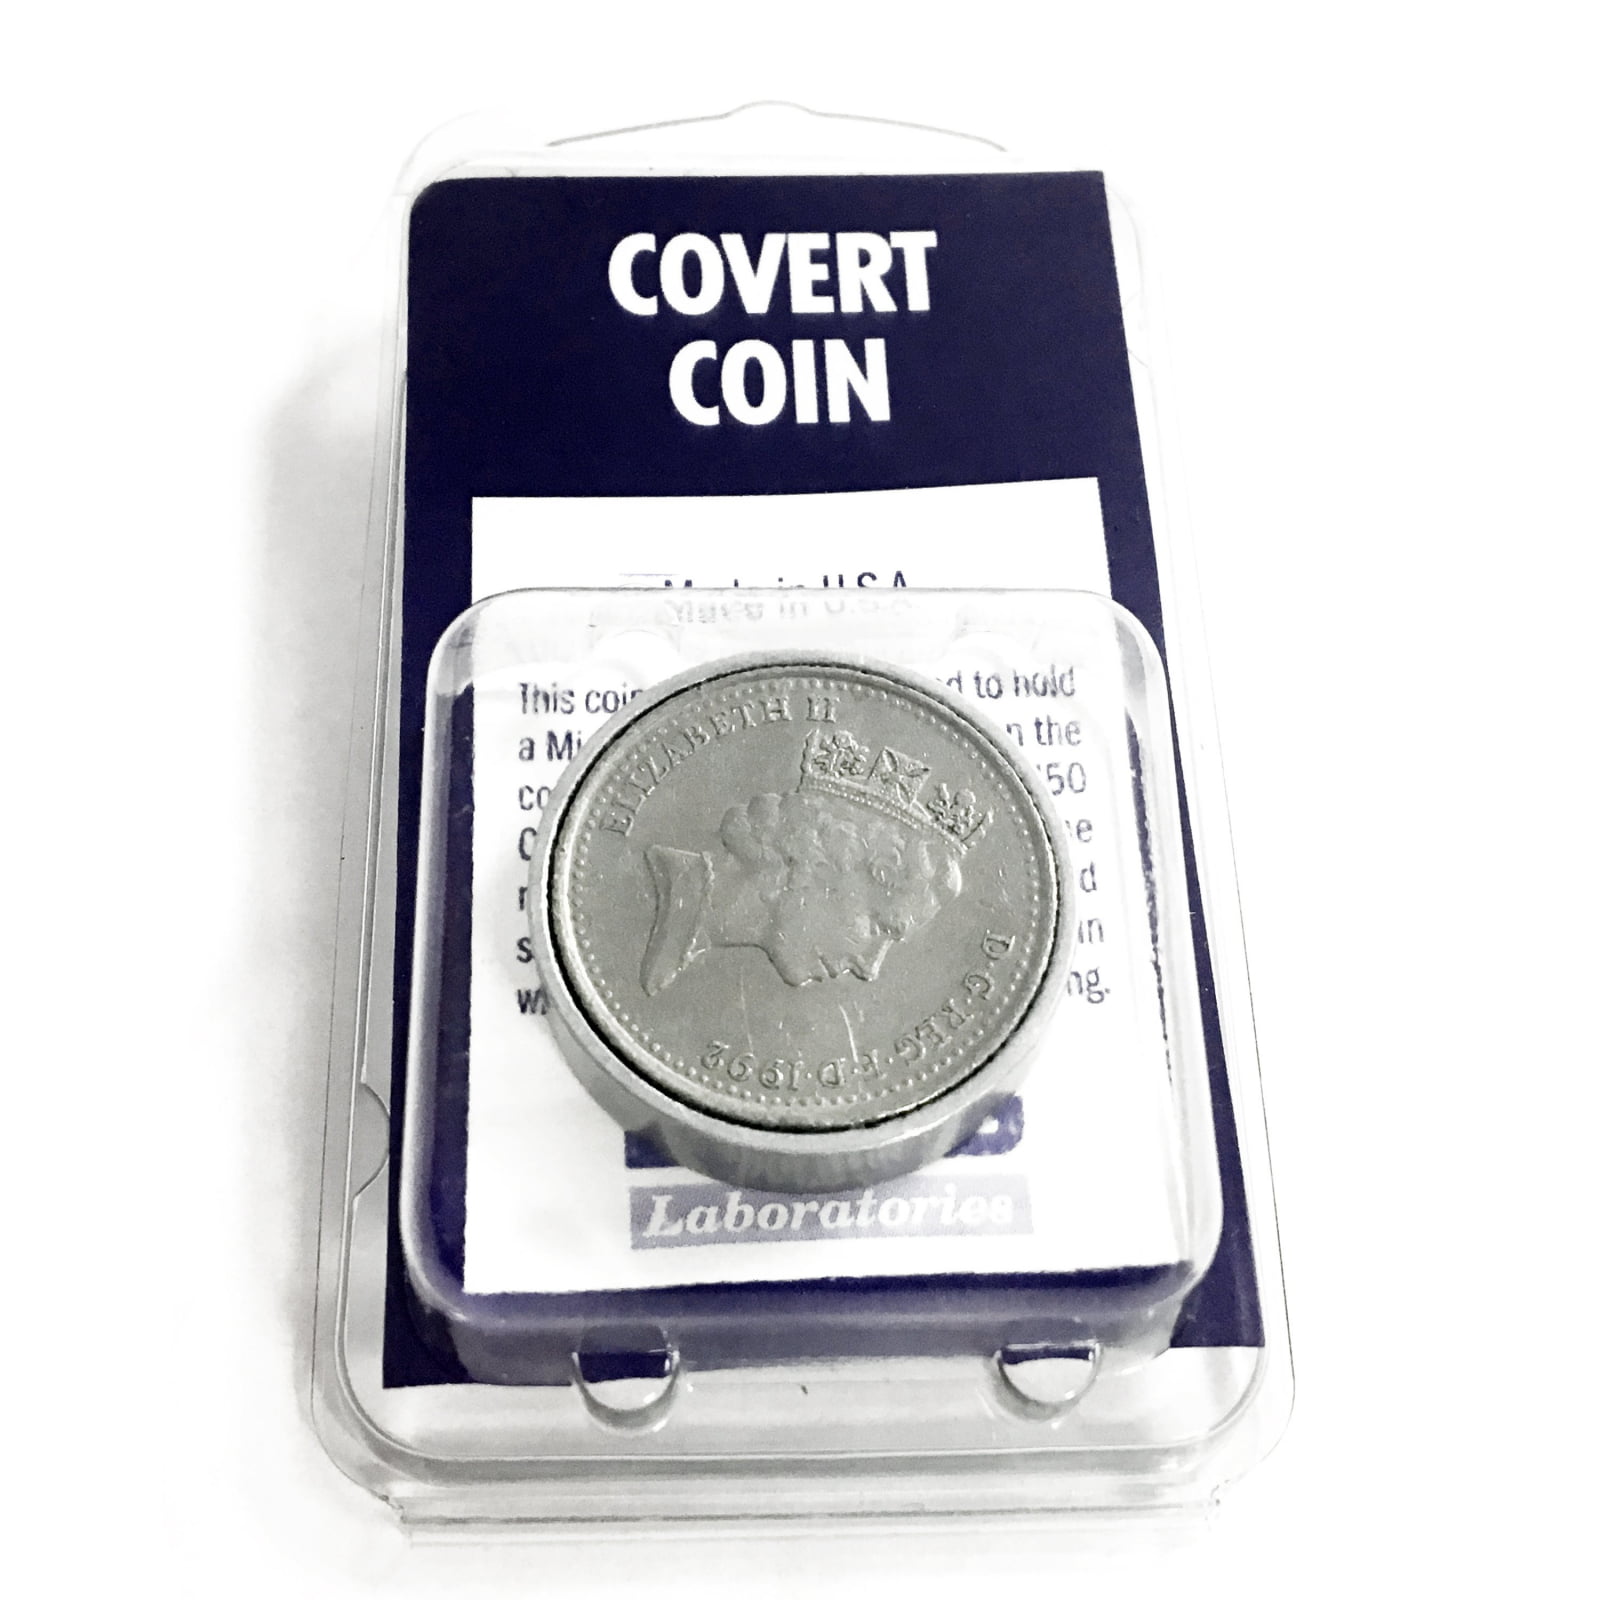 Secret coins